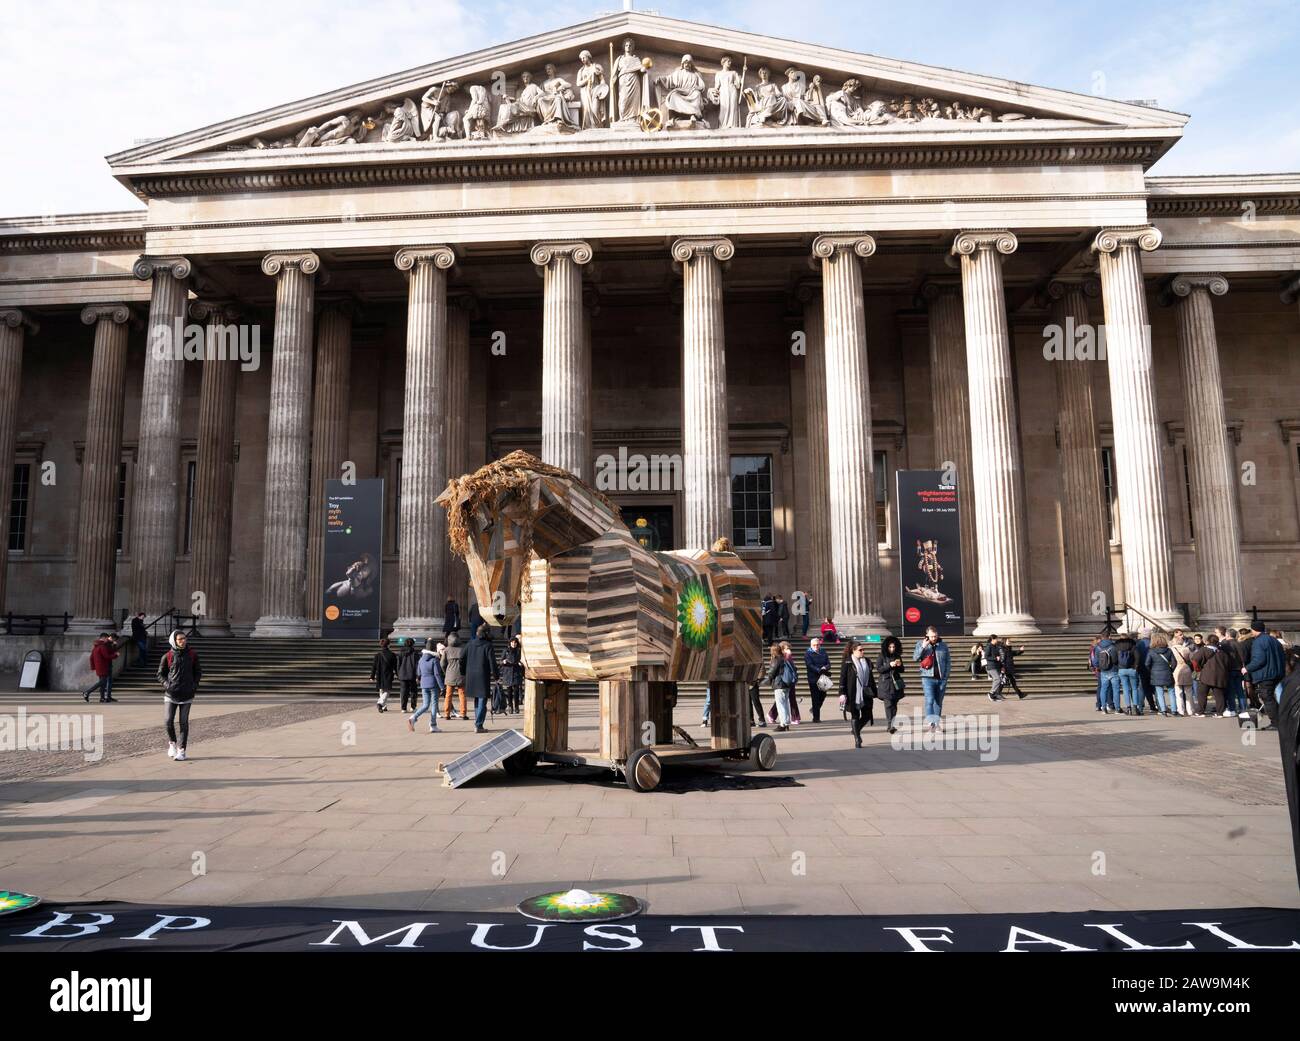 Un cavallo di Troia, messo da attivisti, vestito da soldati greci, di fronte al British Museum, Londra in protesta contro BP, che sponsorizzano la mostra Troia al museo. Foto Stock